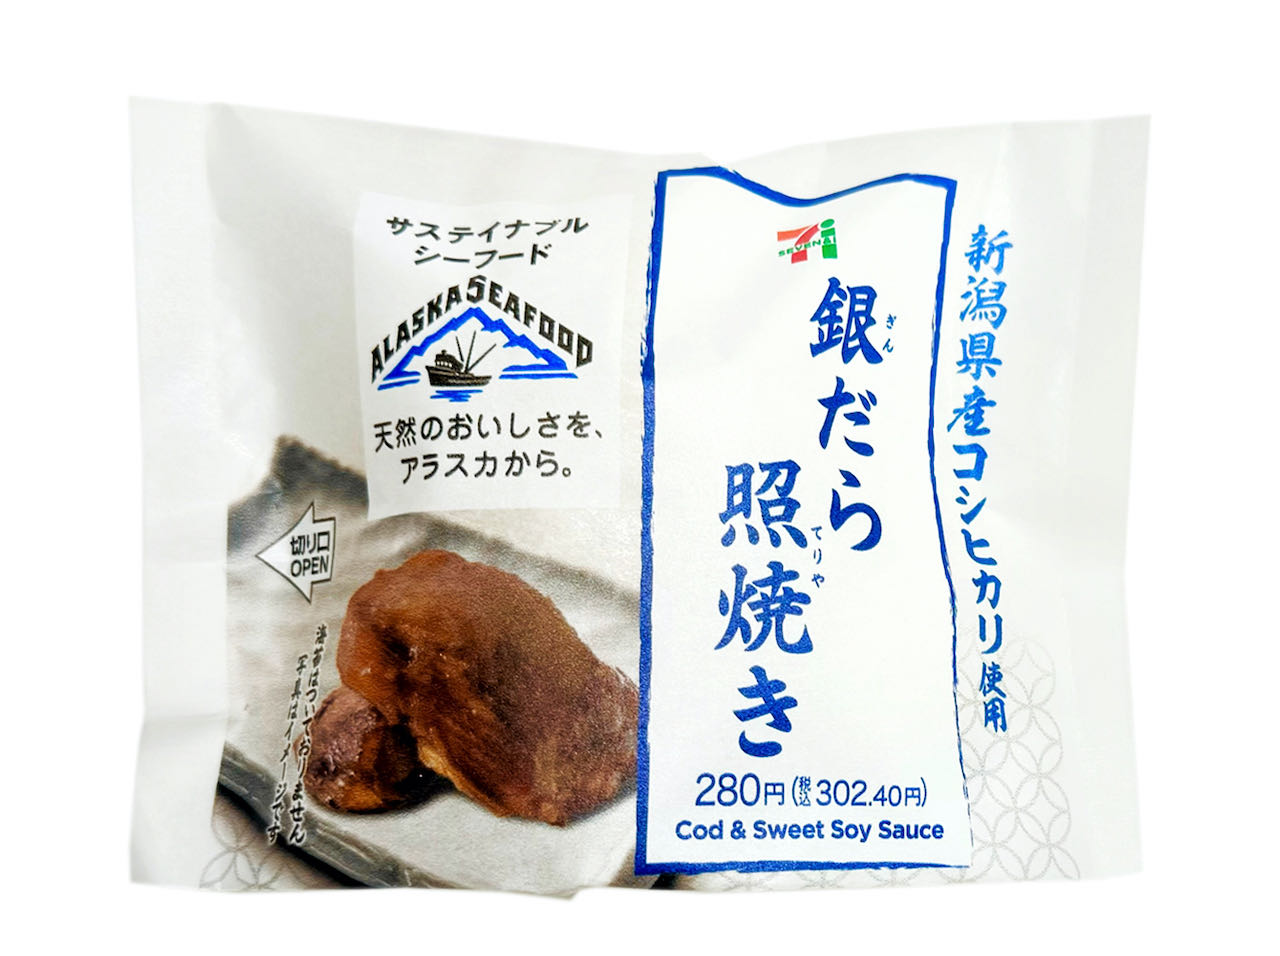 新潟県産コシヒカリを使用したおむすびです。アラスカ産の脂の乗った銀だらを照焼きにして中具に入れたおむすびです。